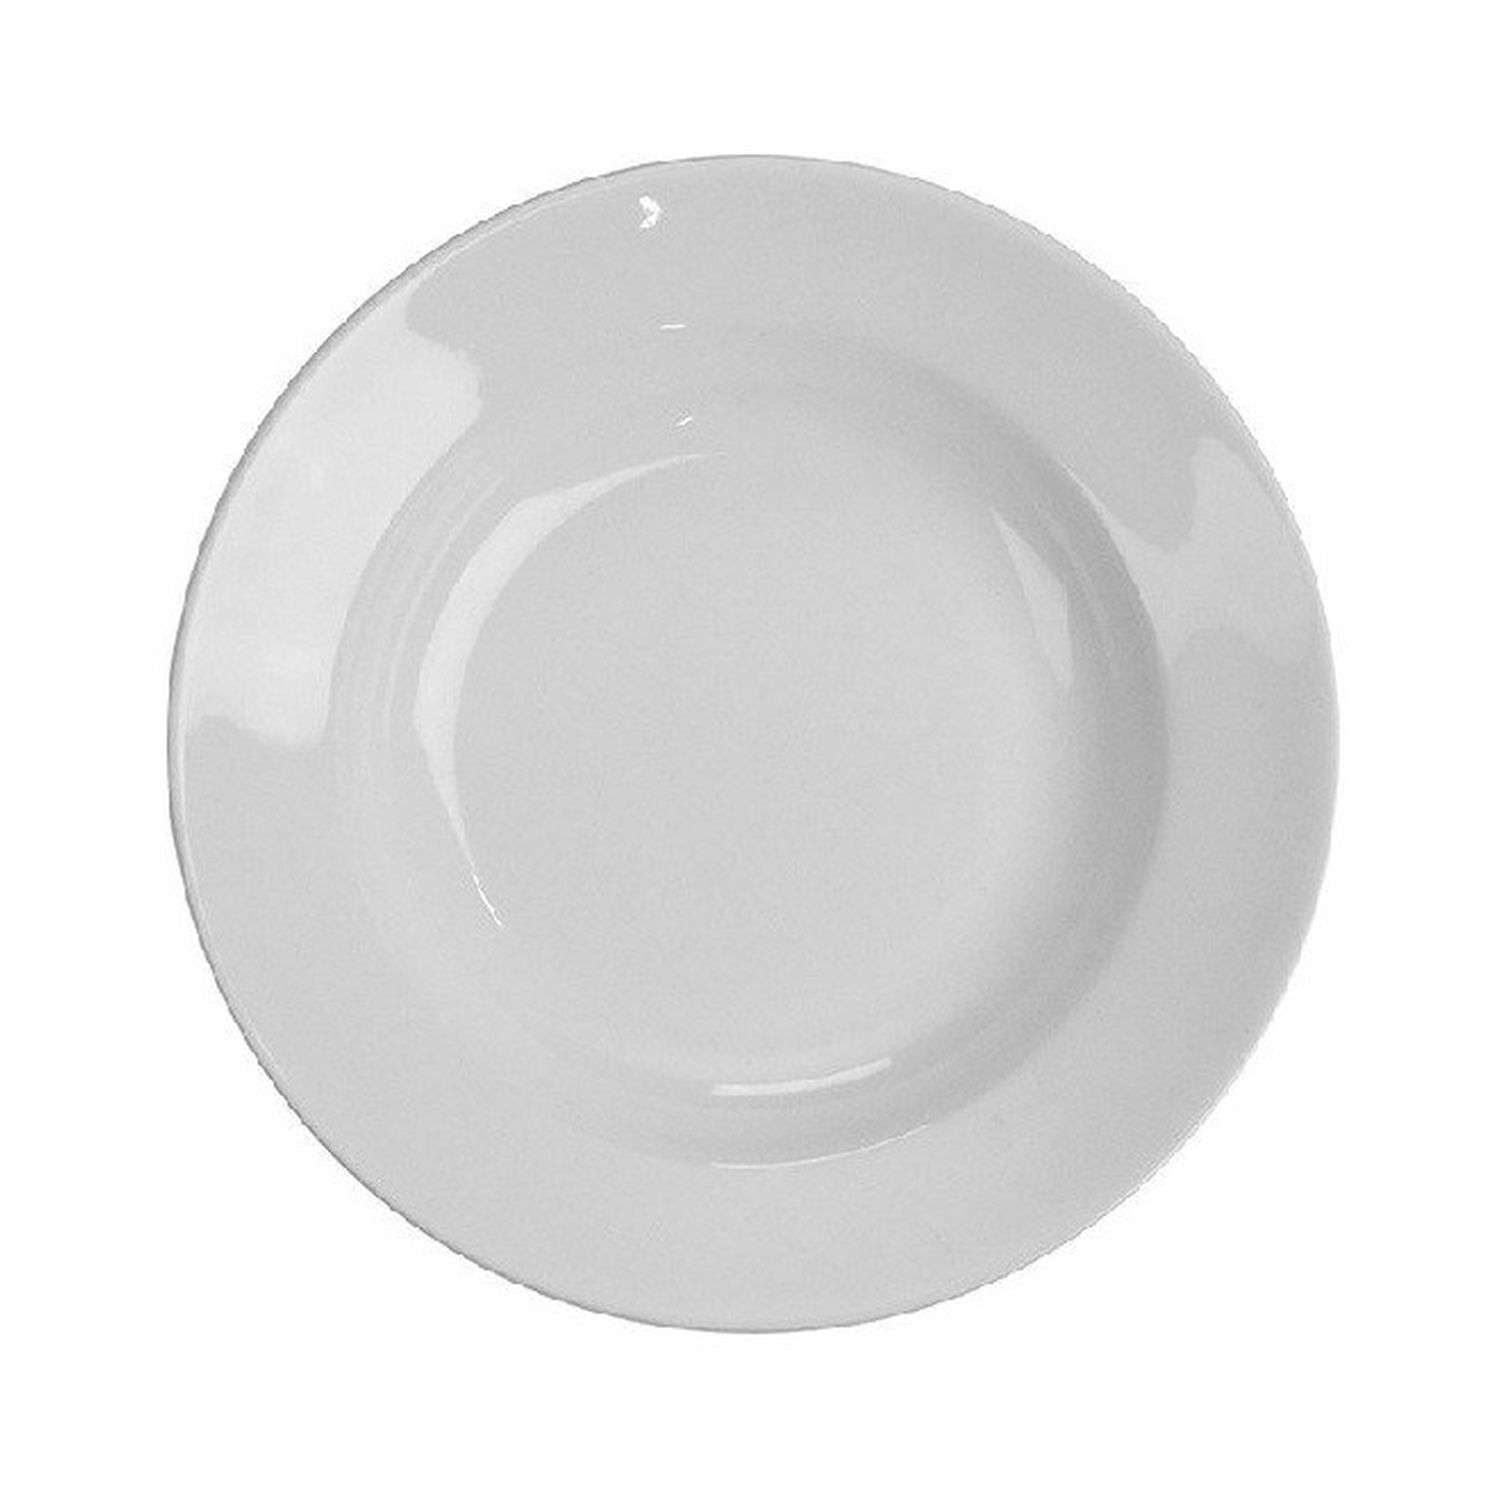 Круглая тарелка Ripoma обеденная с углублением 22 см - фото 1